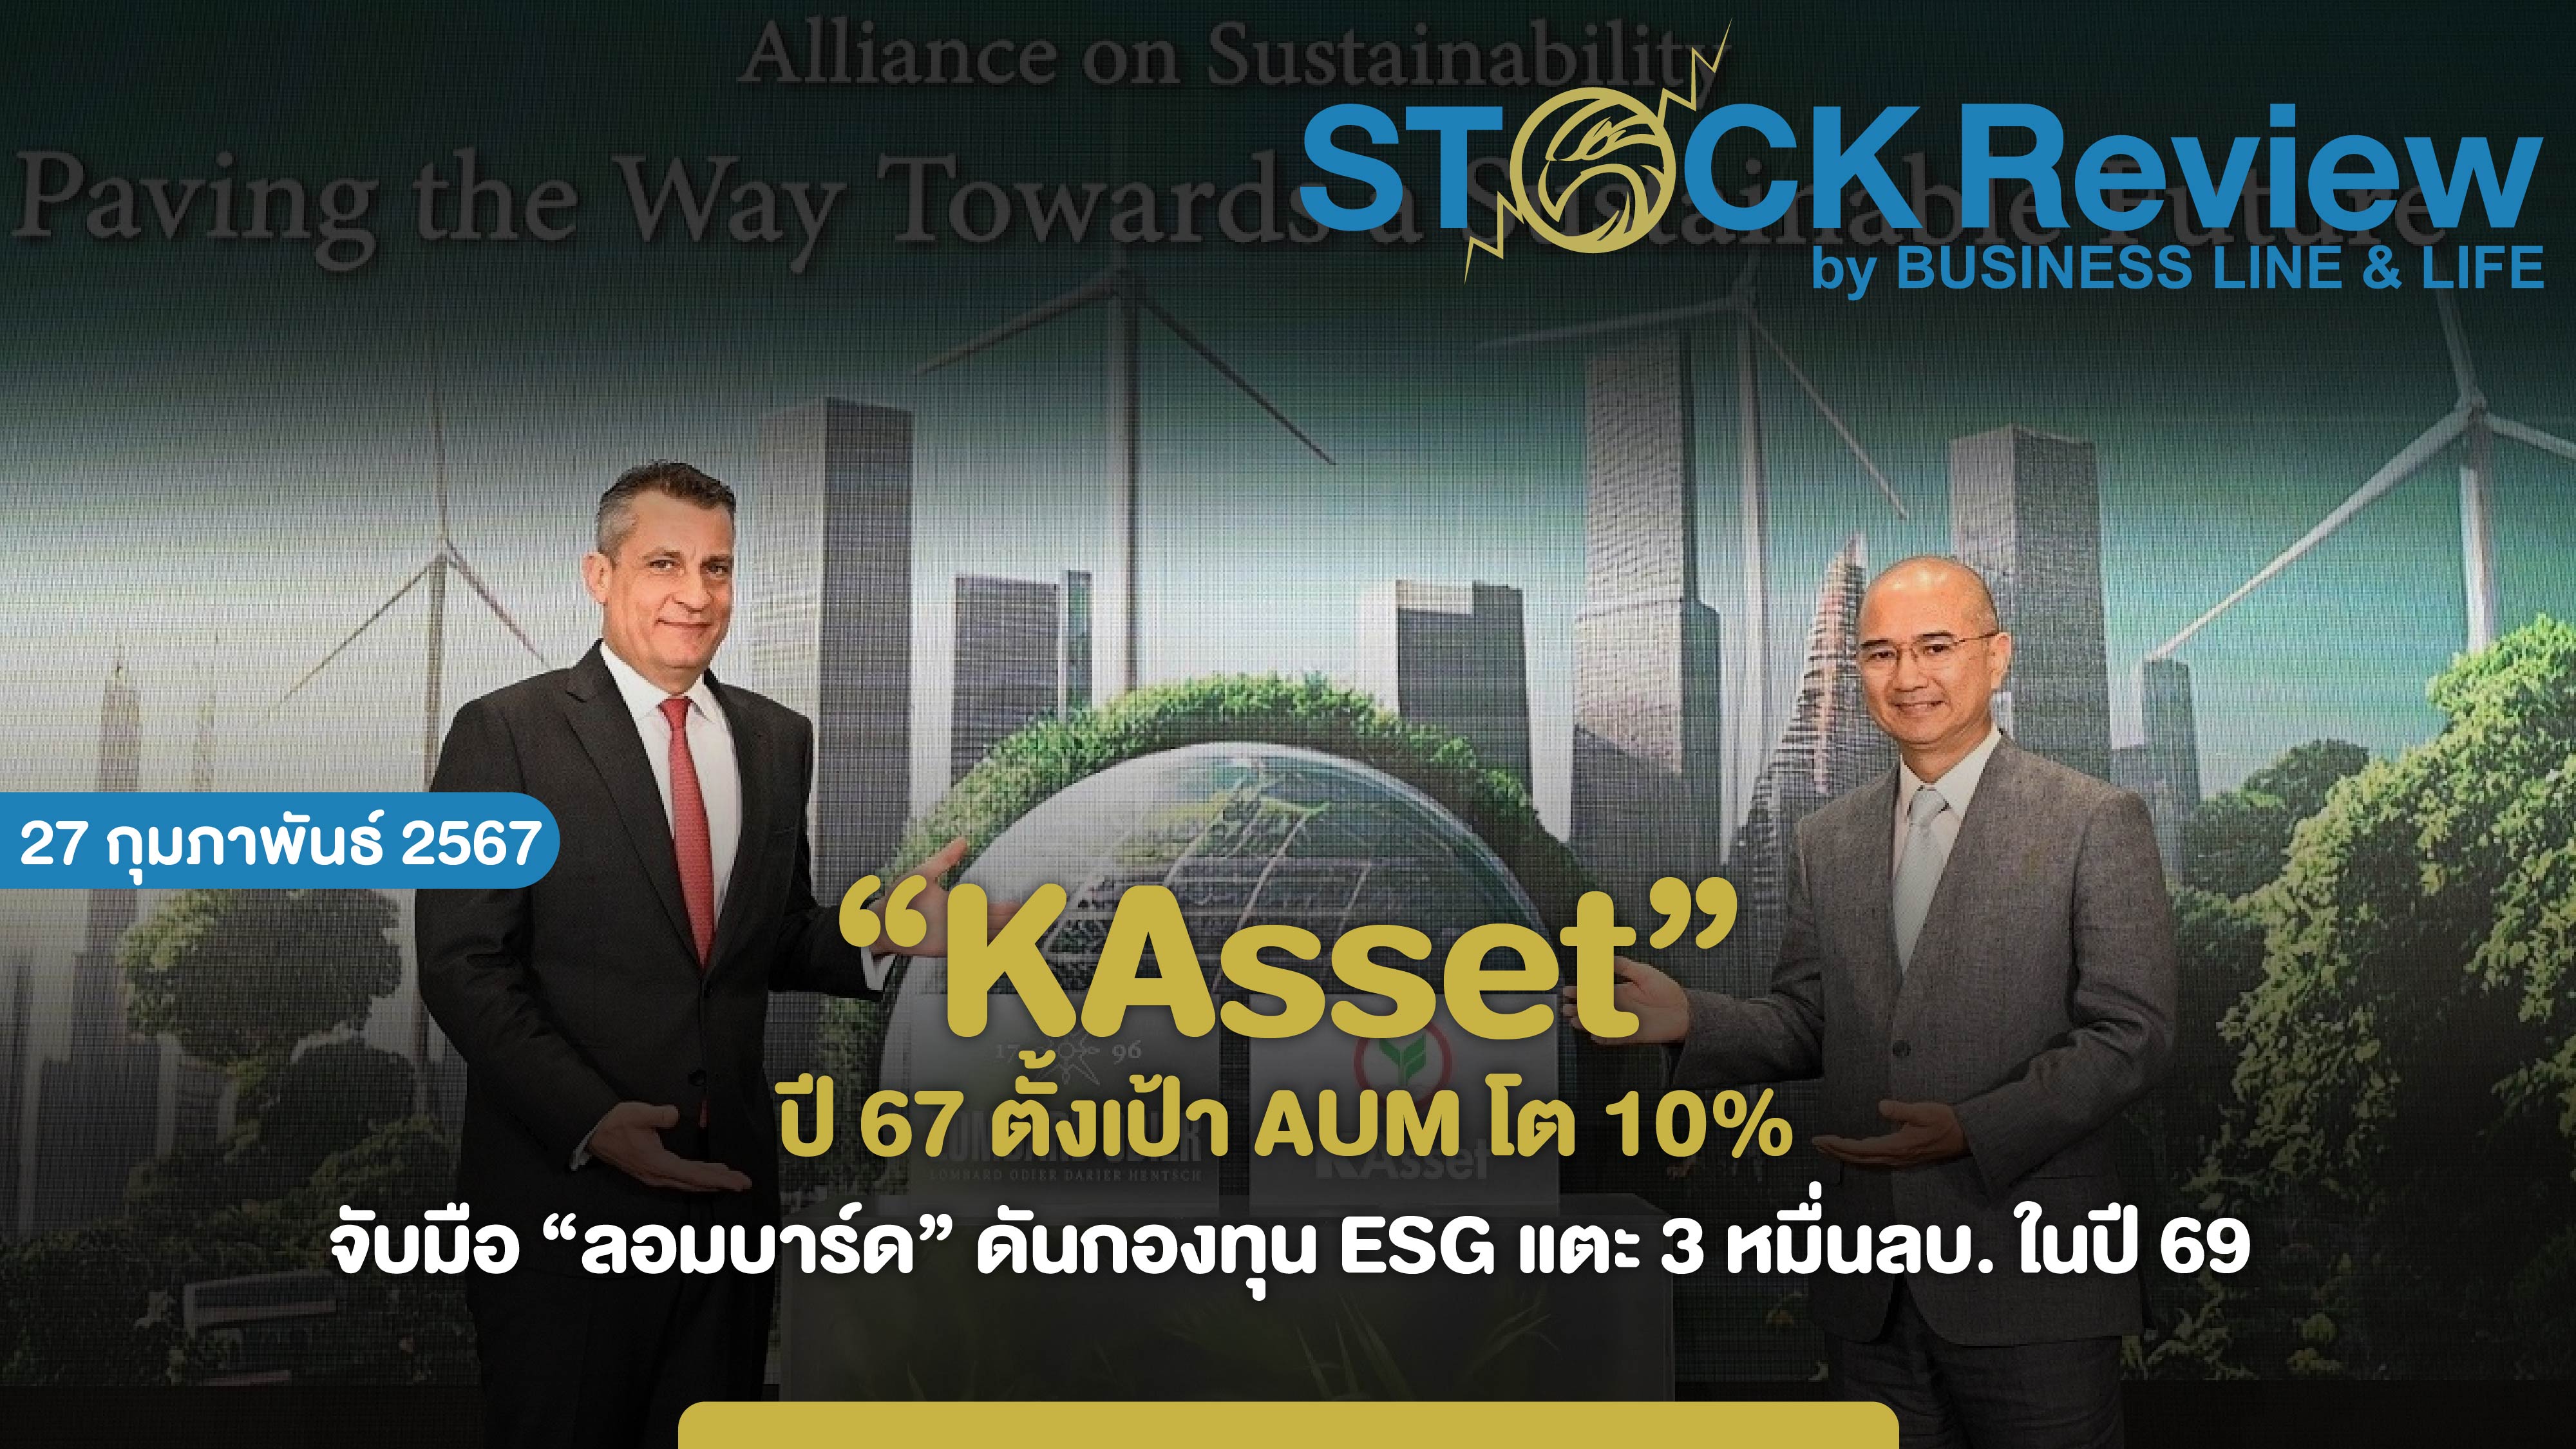 KAsset ปี 67 ตั้งเป้า AUM โต 10% ดันกองทุน ESG แตะ 3 หมื่นลบ.ในปี 69